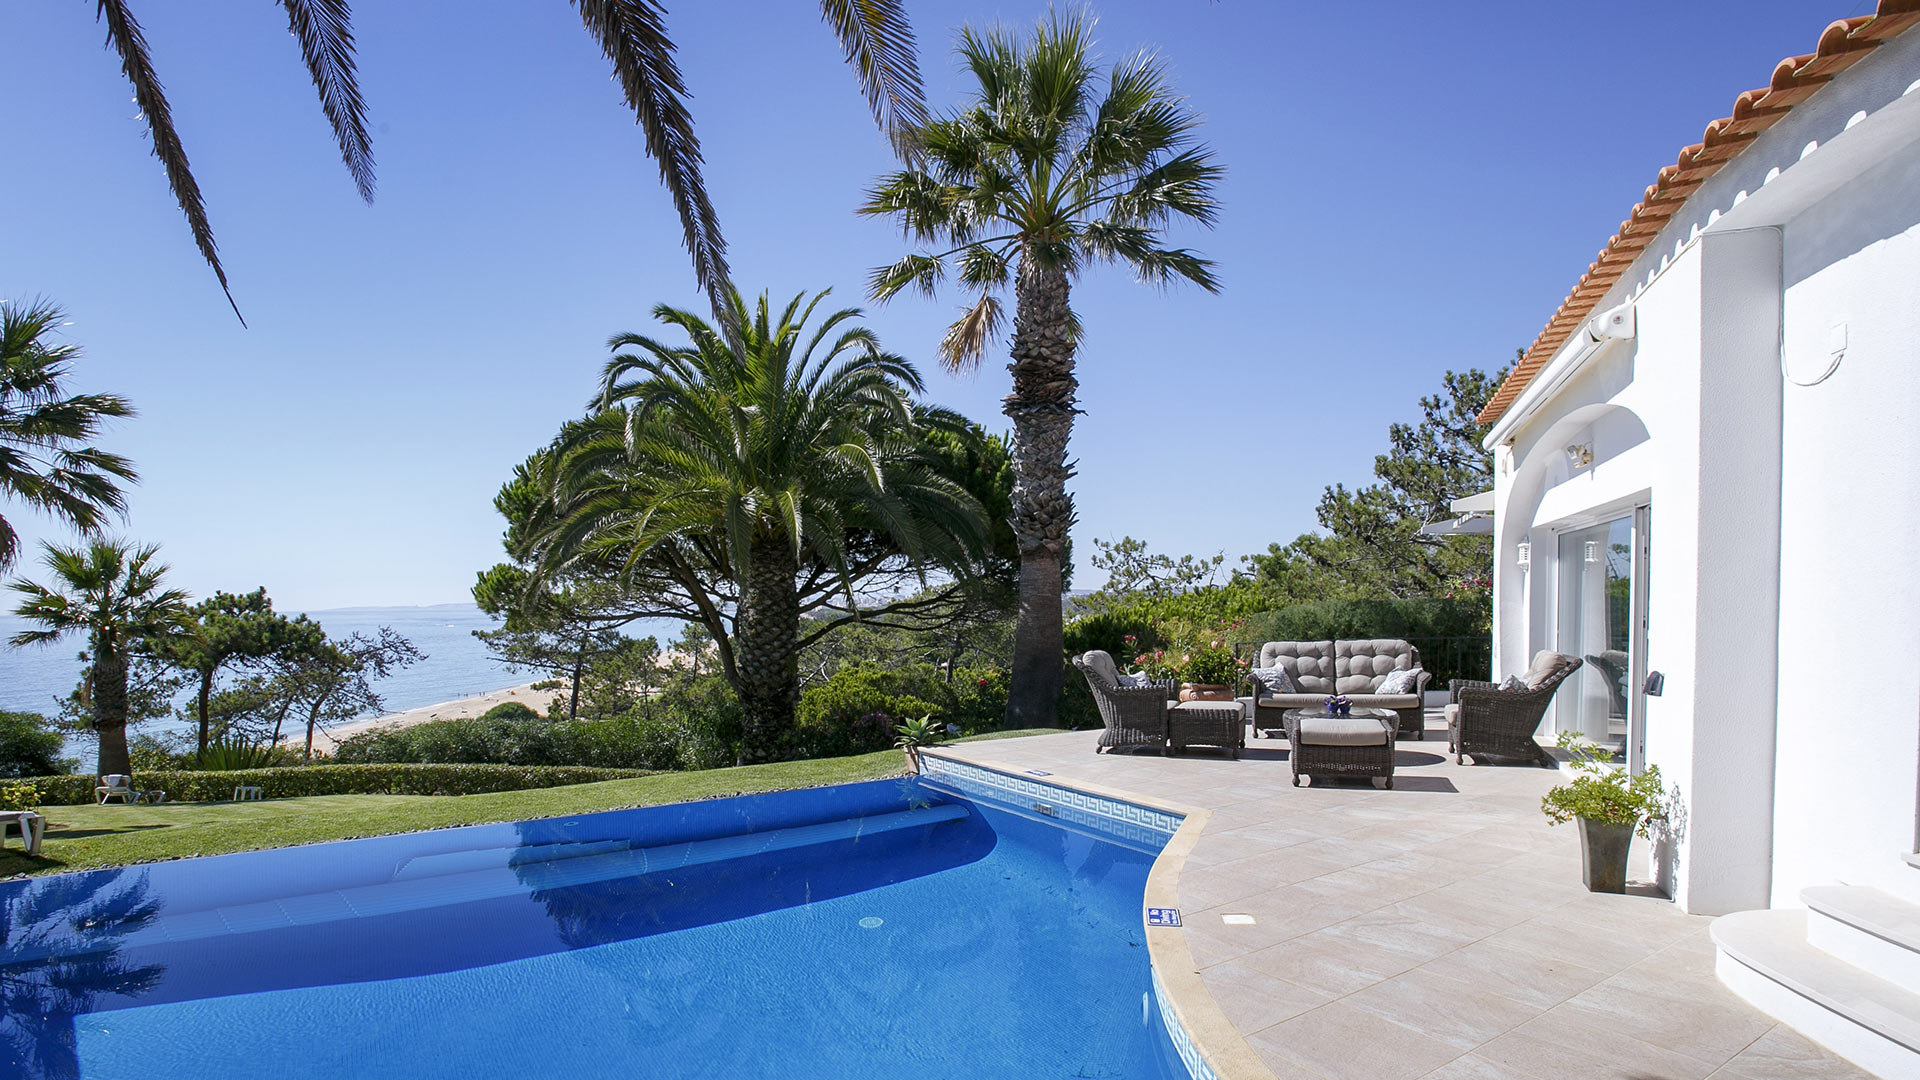 Villa Villa Toucan, Rental in Algarve